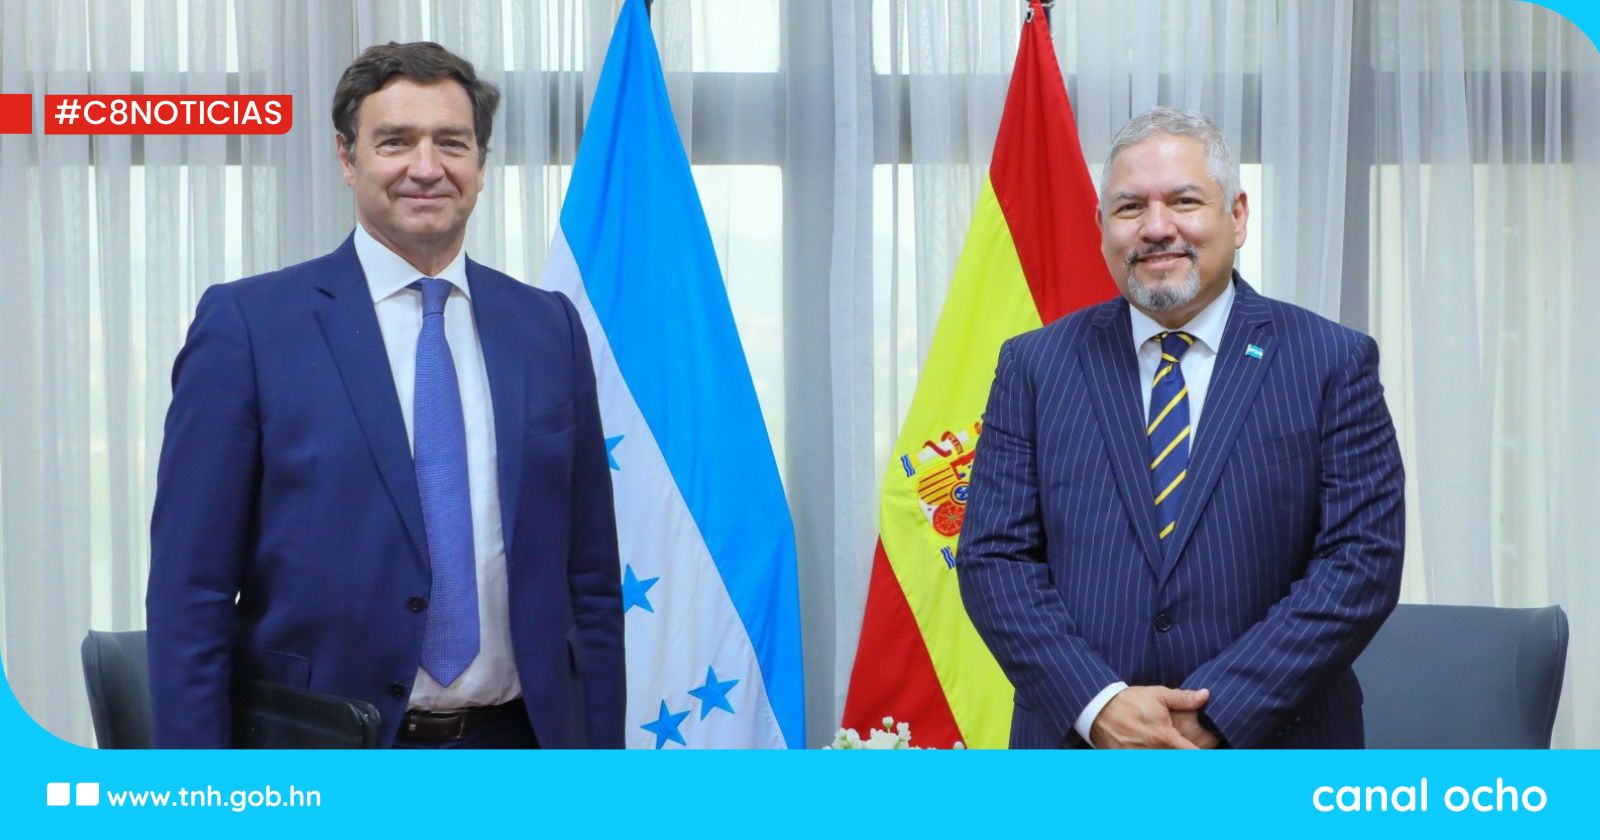 Honduras y España fortalecen relaciones bilaterales